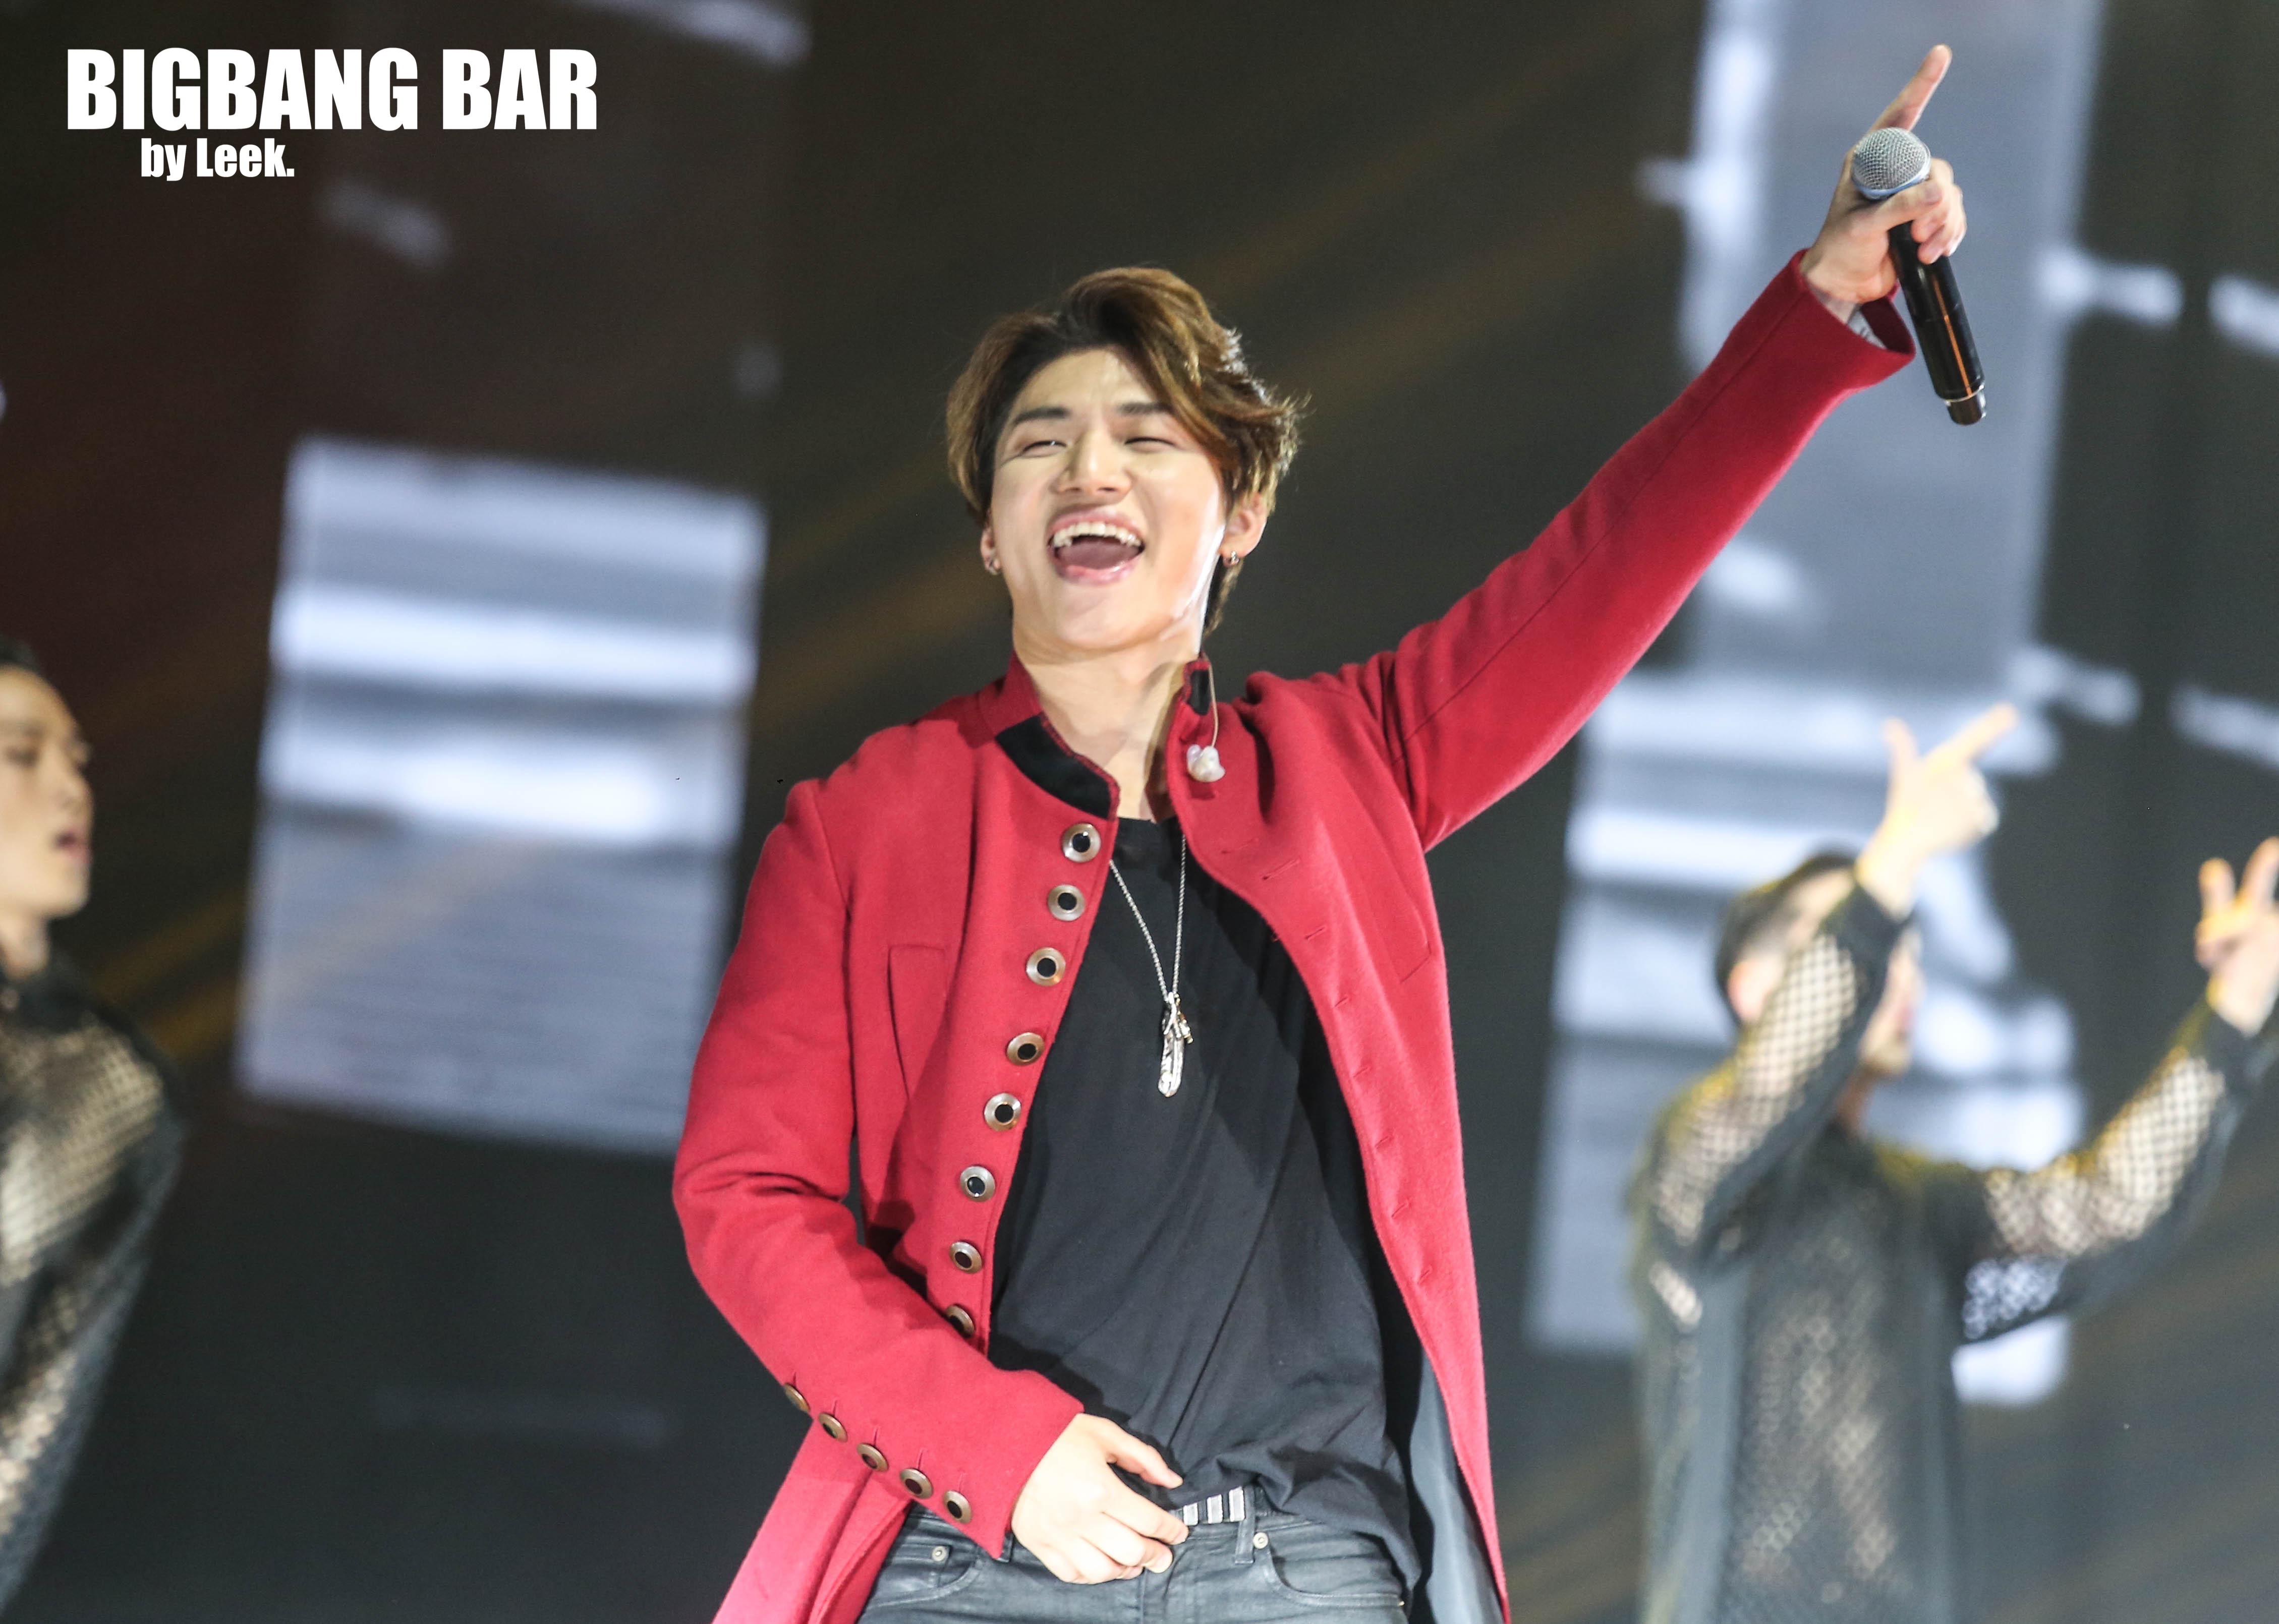 BIGBANG VIPevent Beijing 2016-01-01 By BIGBANGBar By Leek (39)